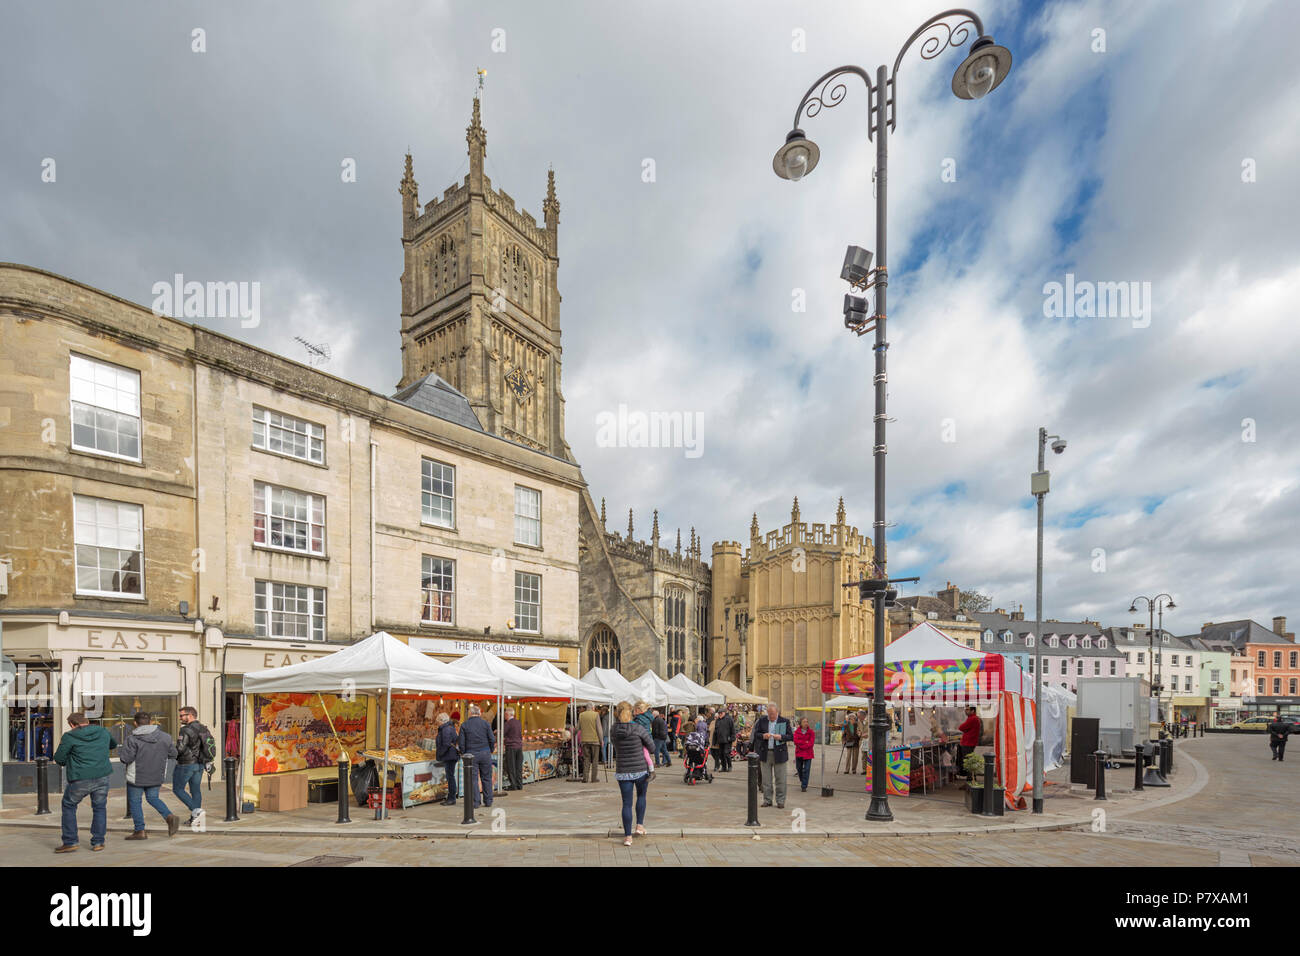 La ville de marché de Cotswold Cirencester et l'église Saint Jean Baptiste, Gloucestershire, England, UK Banque D'Images